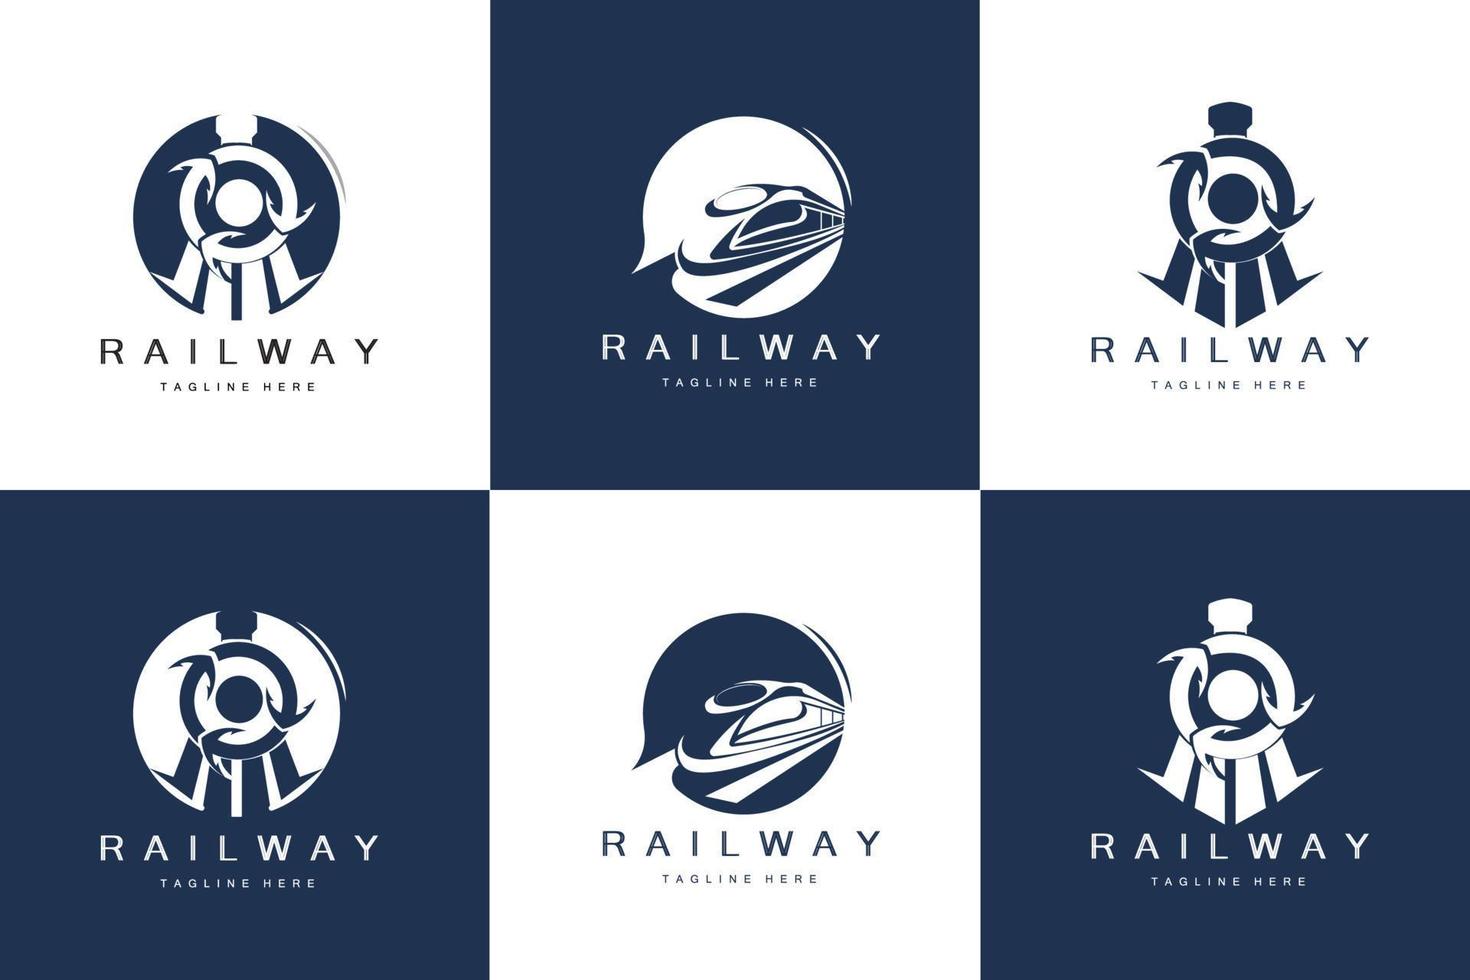 design de logotipo de trem. vetor de trilha de trem rápido, ilustração de veículo de transporte rápido, transporte terrestre de empresa de ferrovia de locomotiva de design e entrega rápida